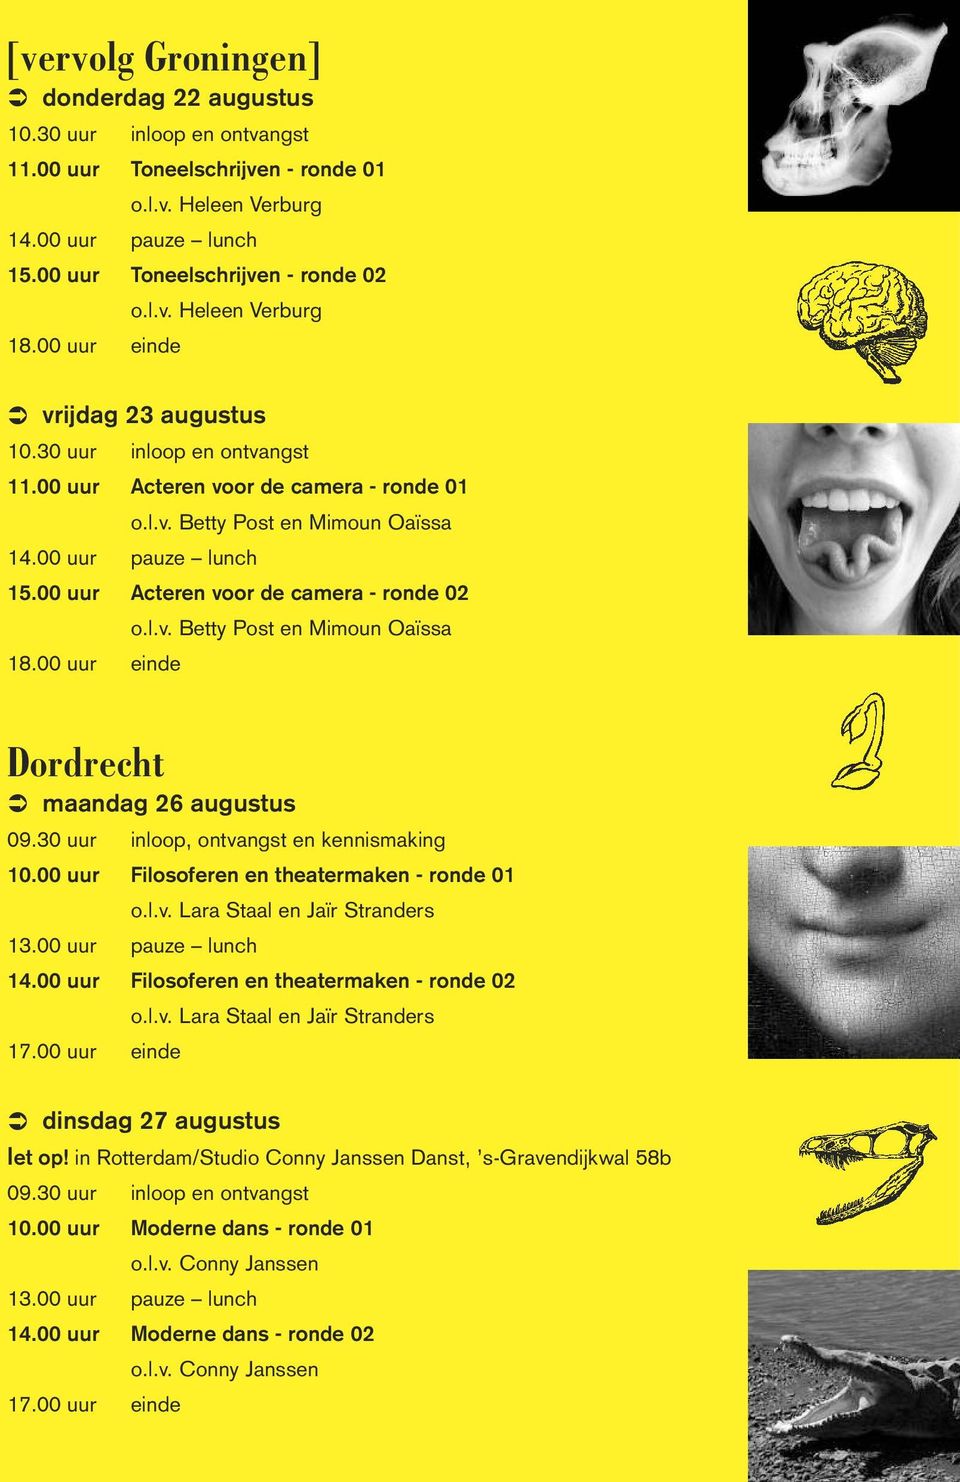 00 uur einde Dordrecht maandag 26 augustus 09.30 uur inloop, ontvangst en kennismaking 10.00 uur Filosoferen en theatermaken - ronde 01 14.